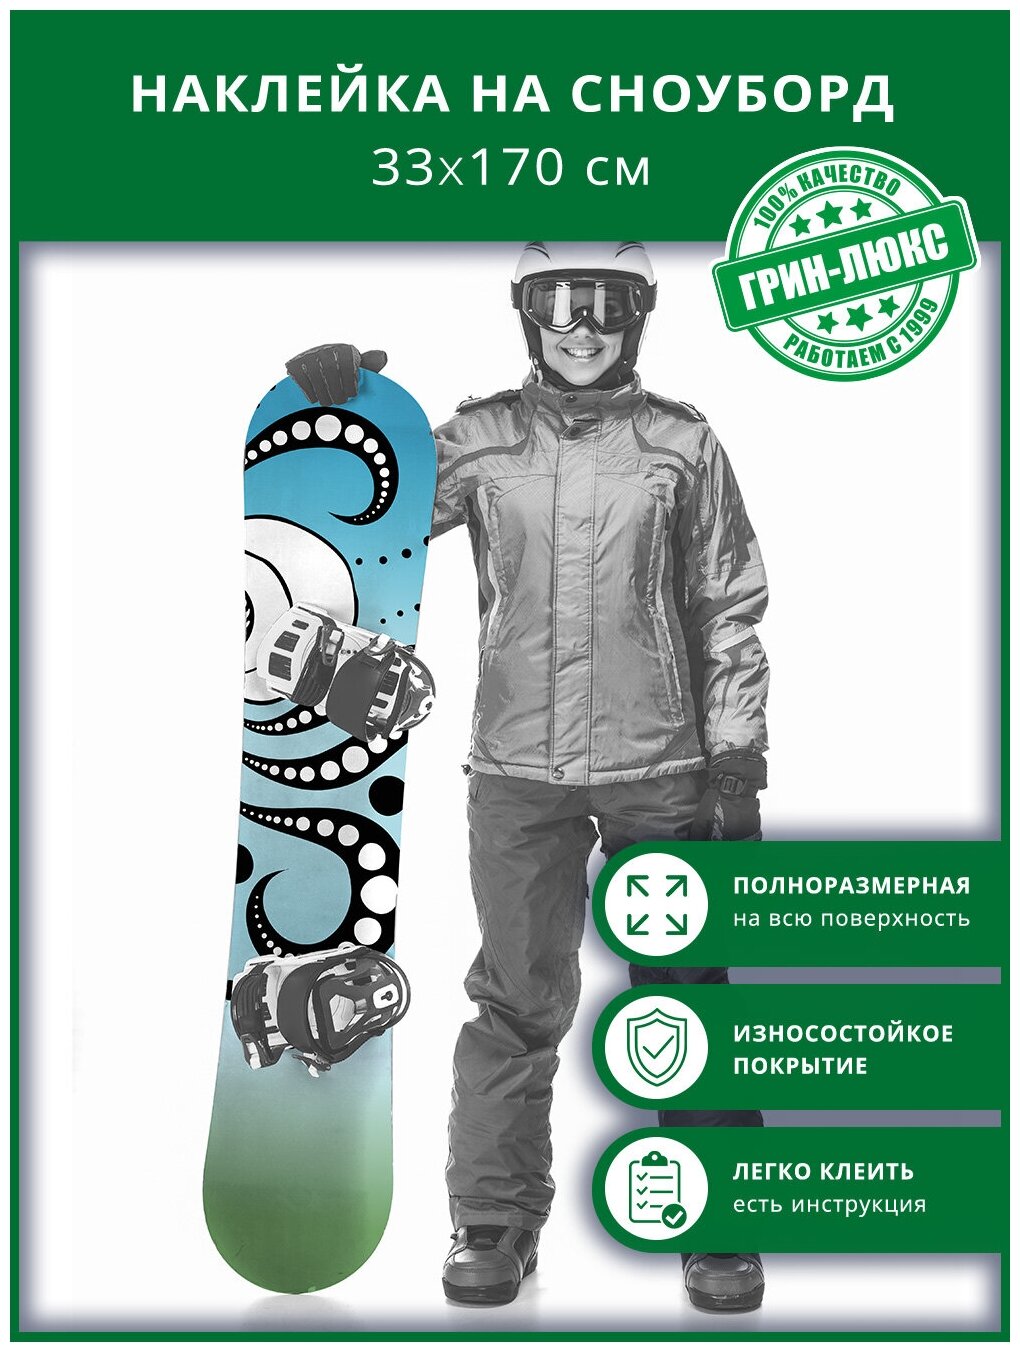 Наклейка на сноуборд с защитным глянцевым покрытием 33х170 см "Графика и градиент"